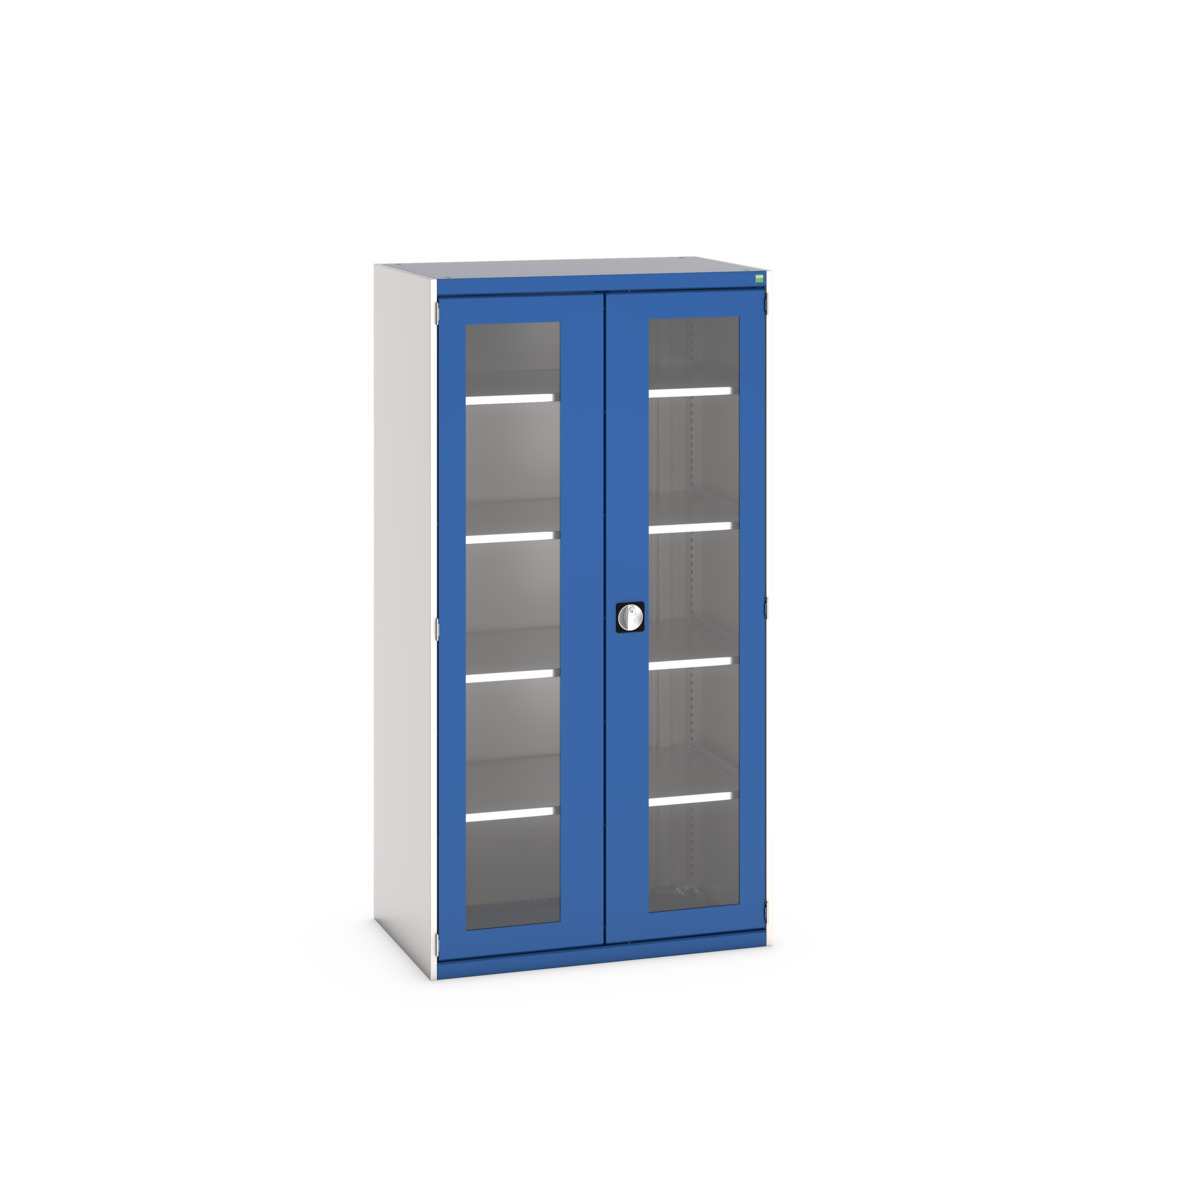 40021134.11V - cubio cupboard